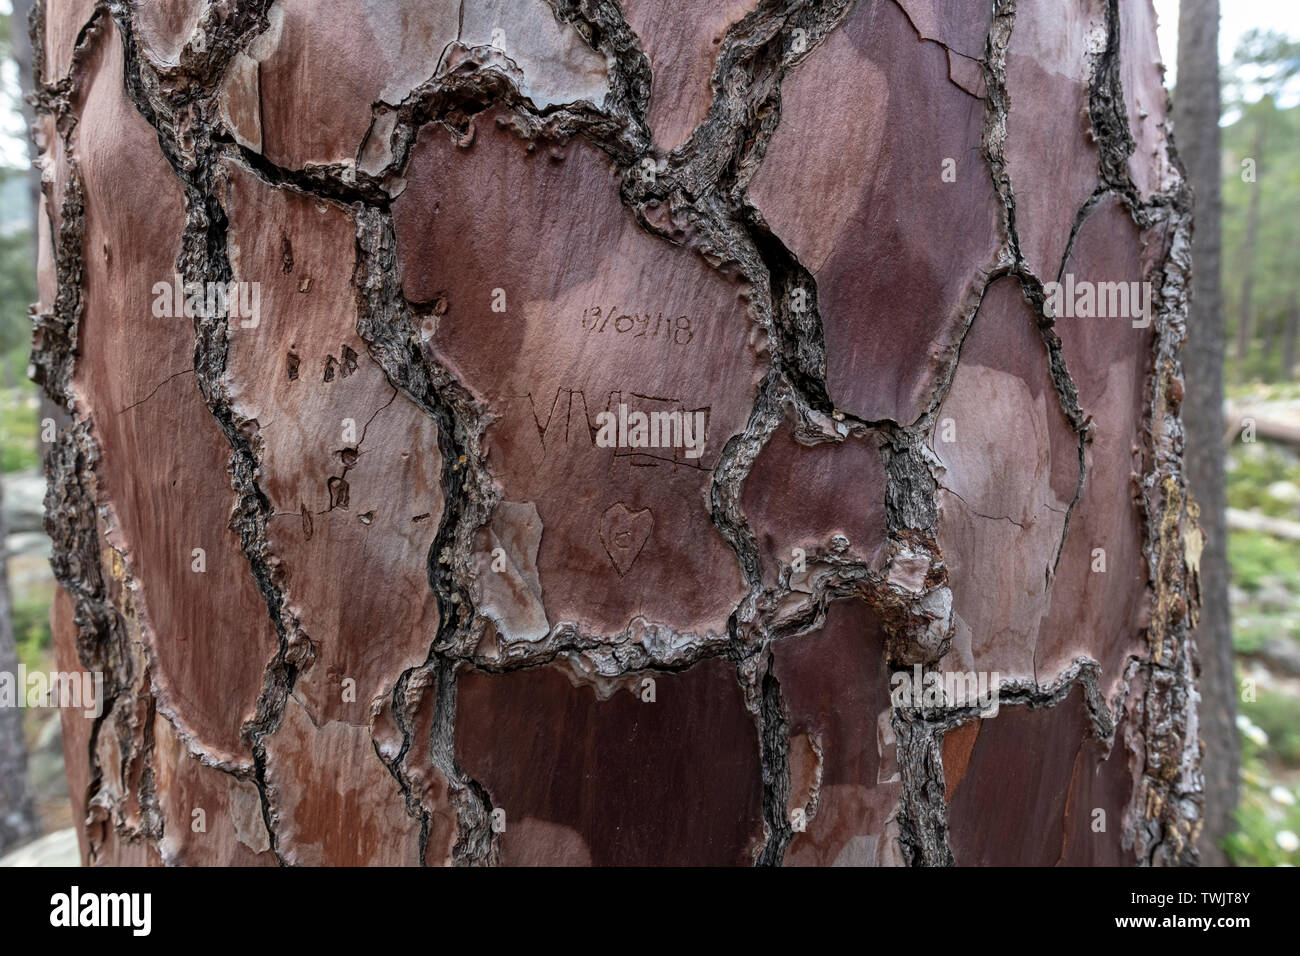 Namen mit Liebe Herz geschnitzt auf einer Rinde von Pine Tree Trunk, Korsika, Frankreich Stockfoto